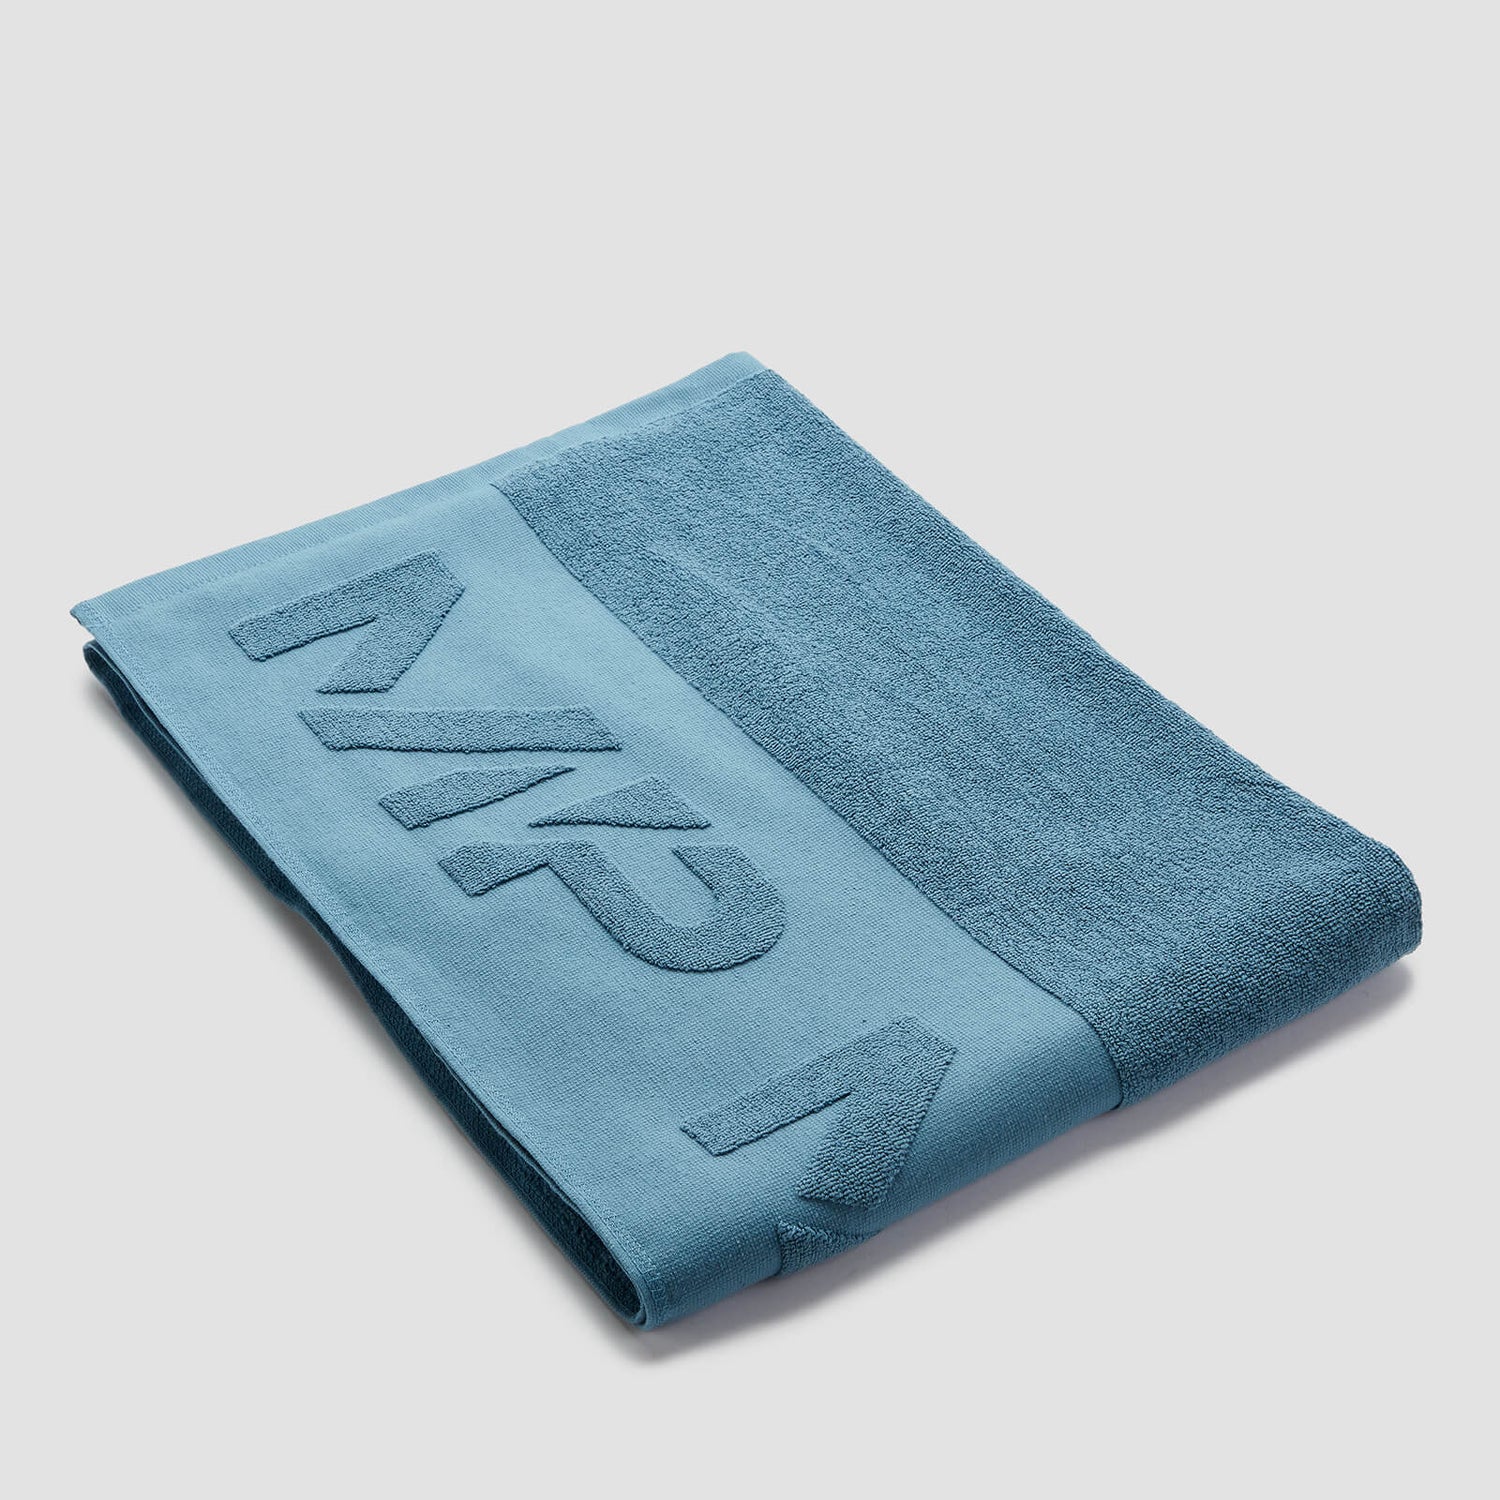 Μεγάλη Πετσέτα Με Λογότυπο MP - Stone Blue